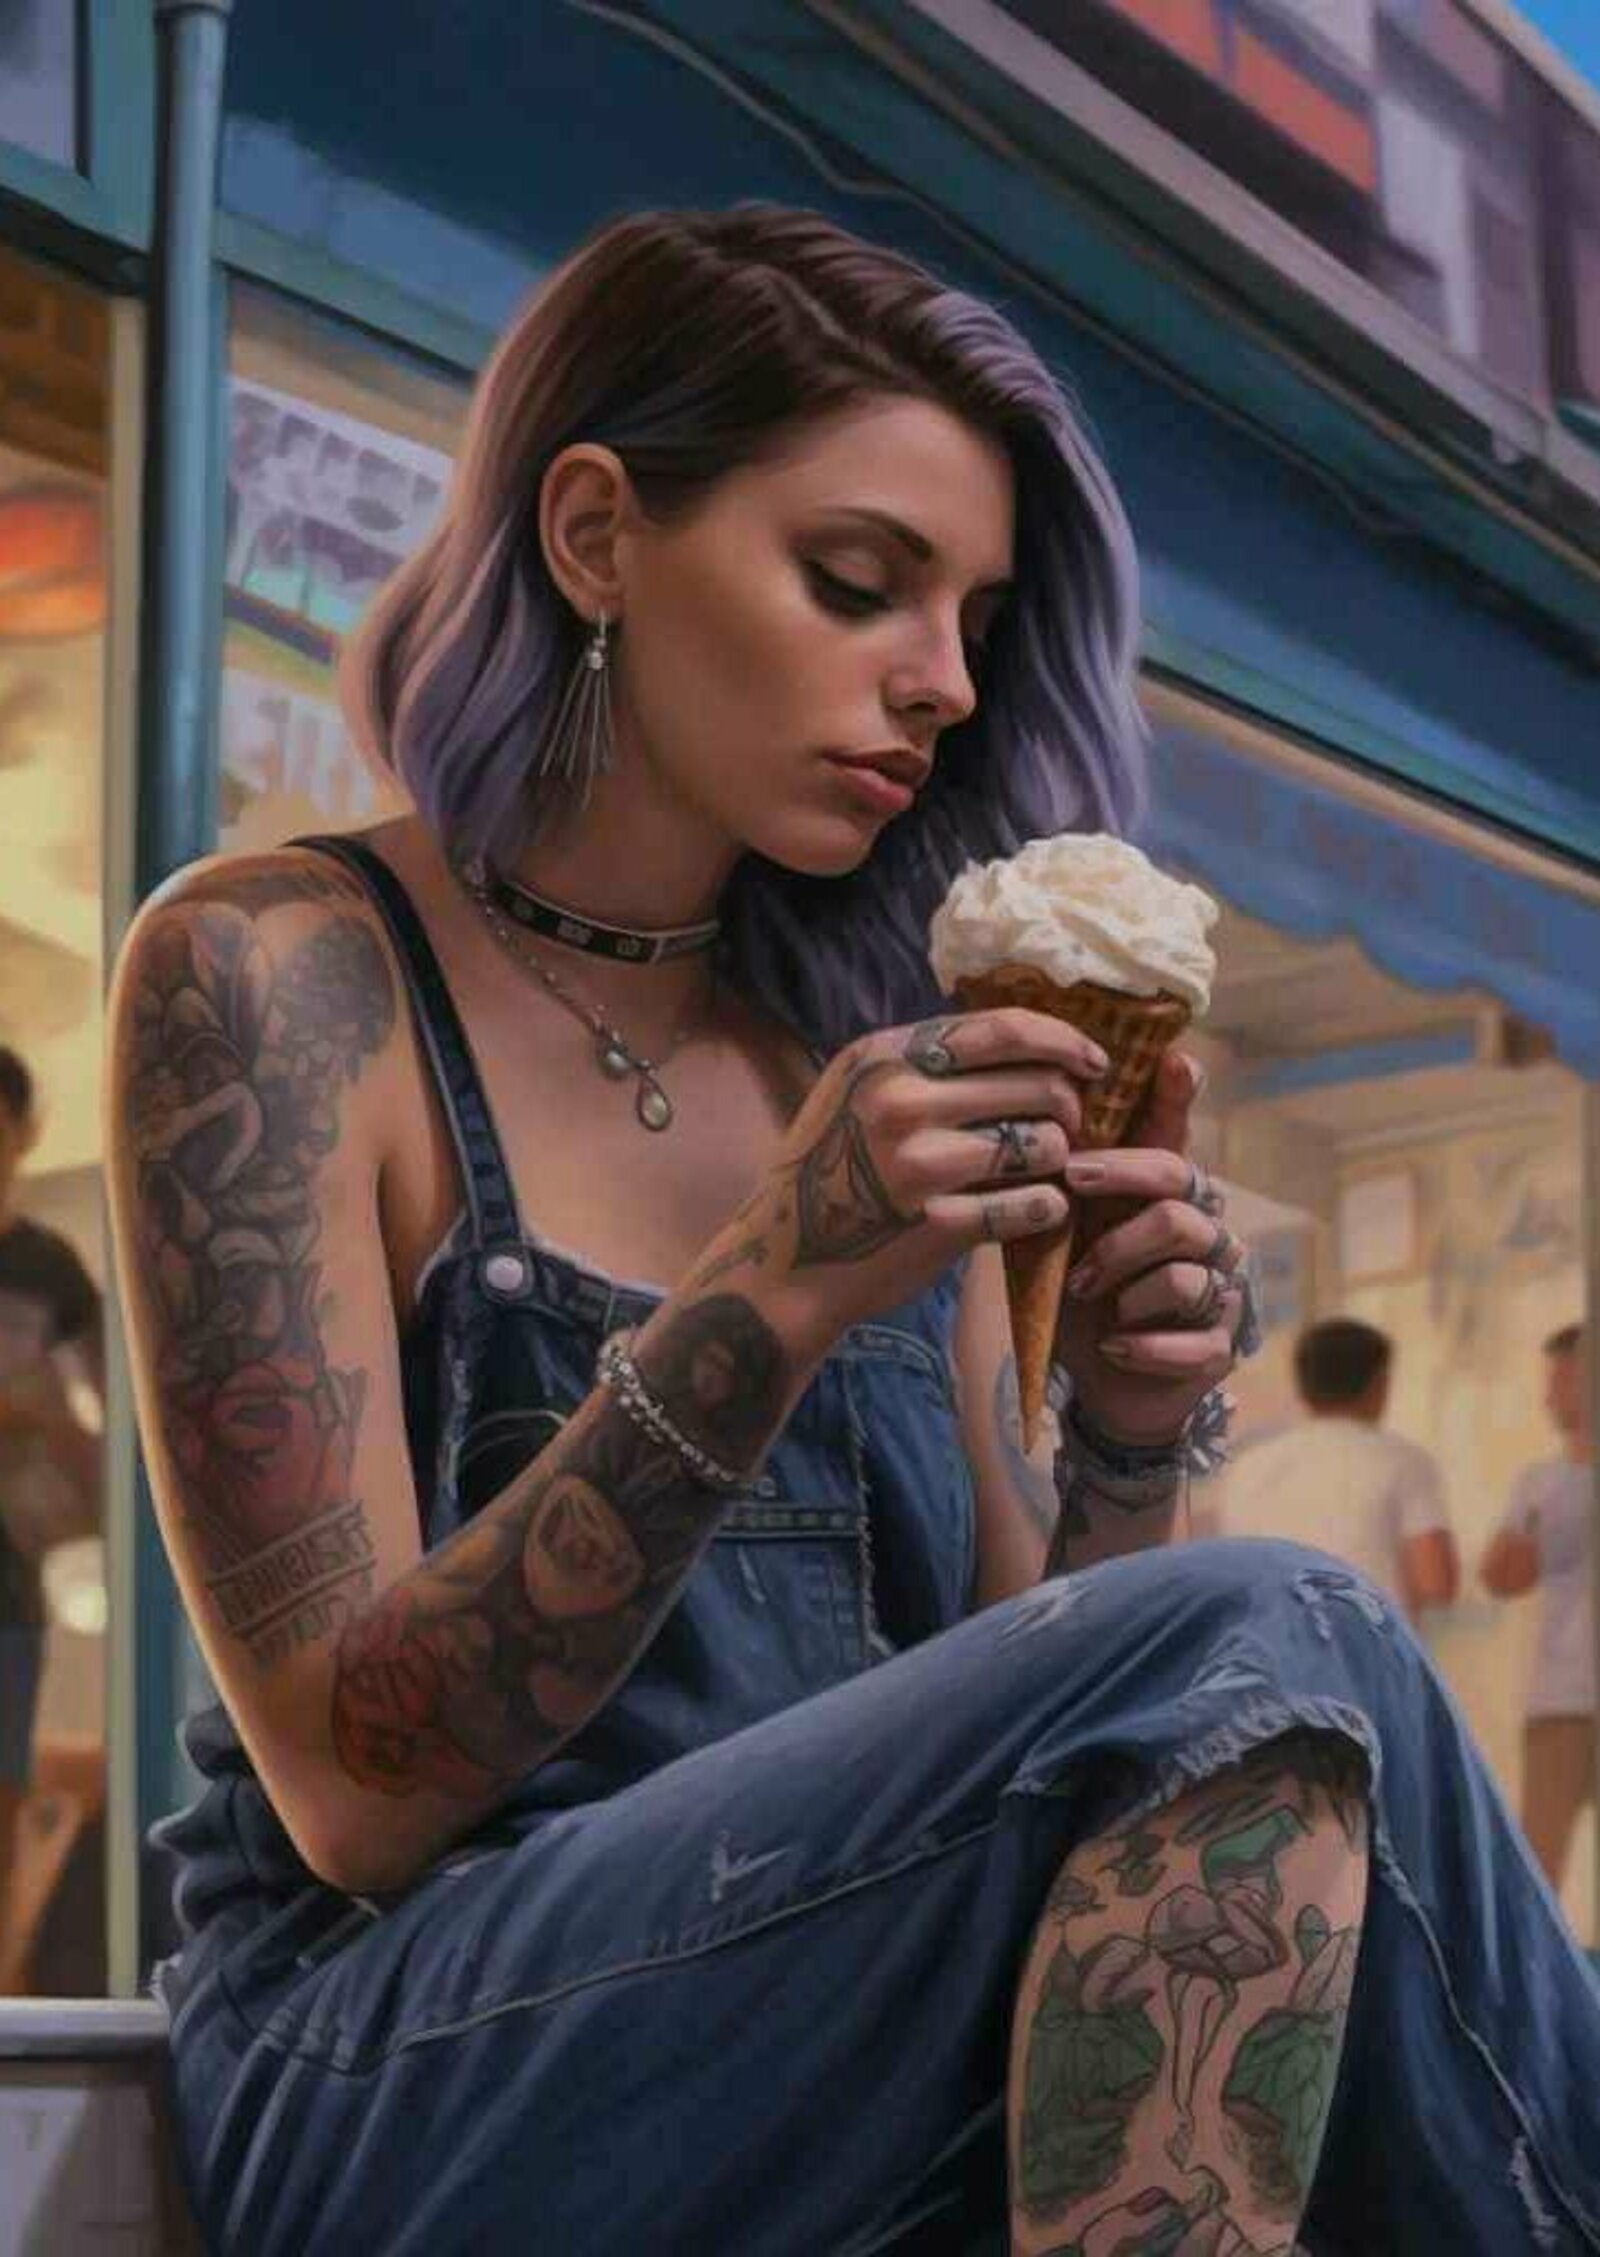 Eine tätowierte junge Frau die auf einer Bank sitzt und Eis isst